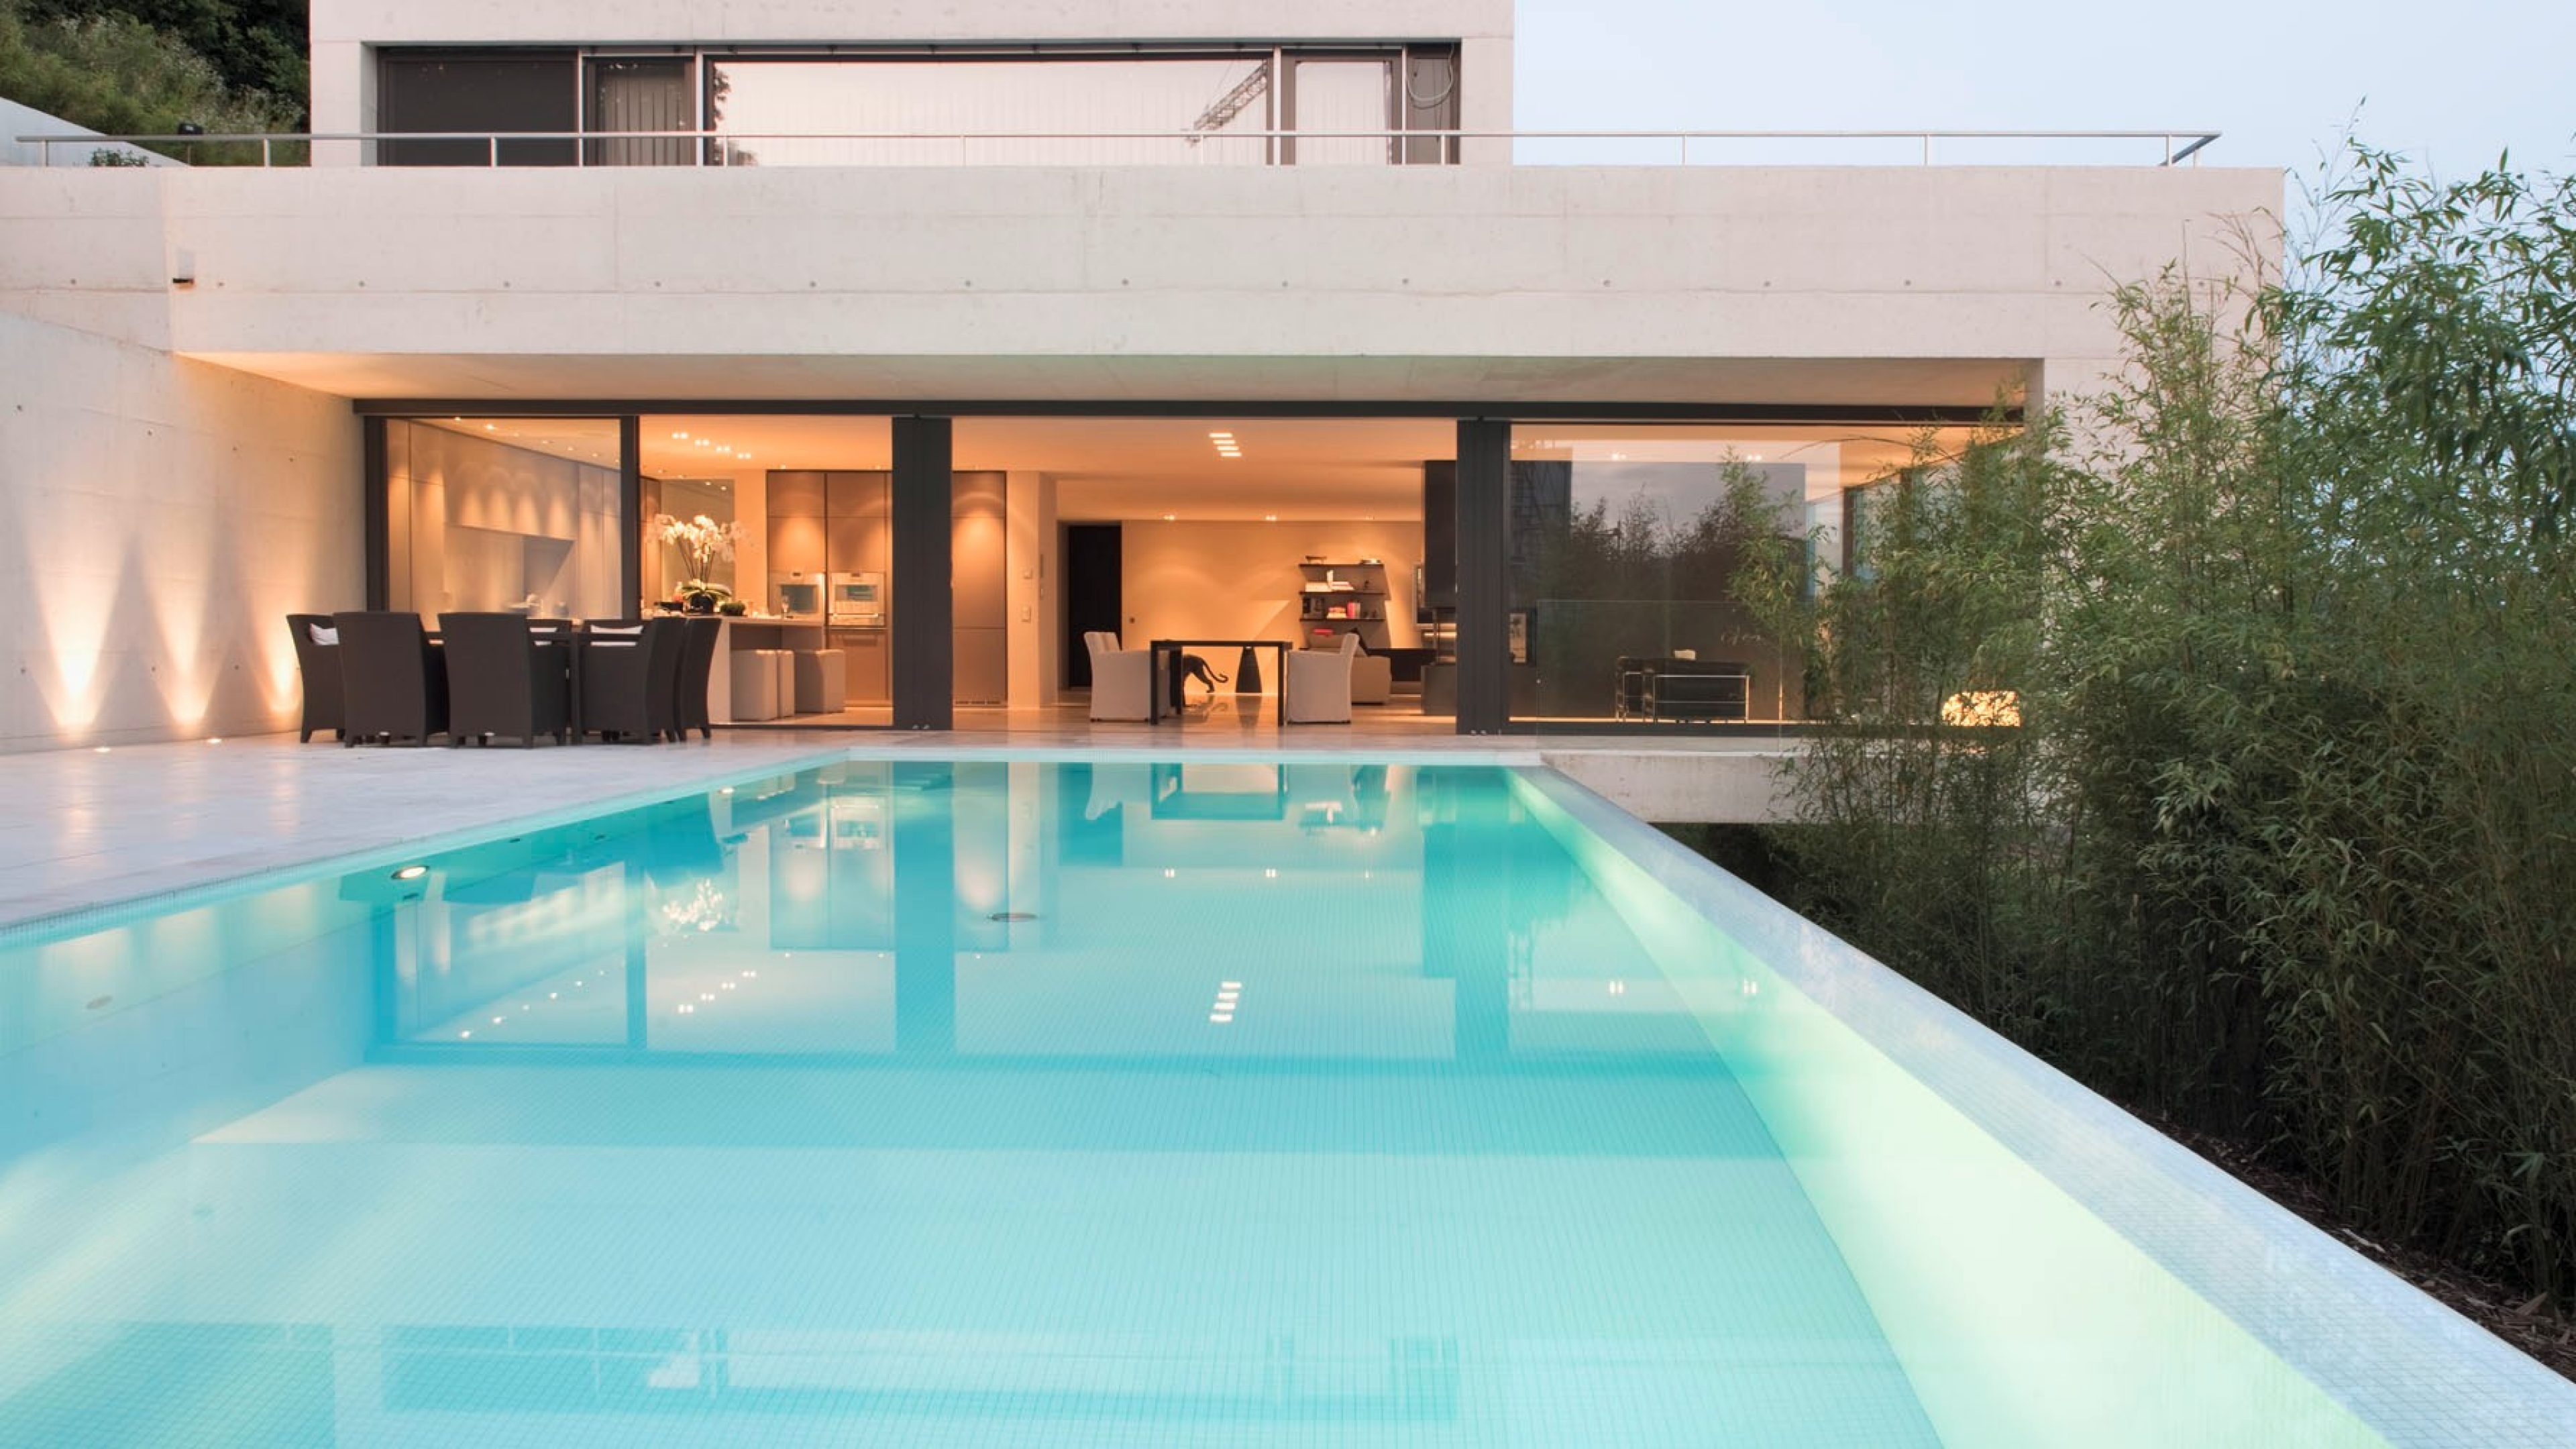 Appartamento di lusso terrazzato con piscina illuminata e vista sul soggiorno arredato con semplicità e modernità. 